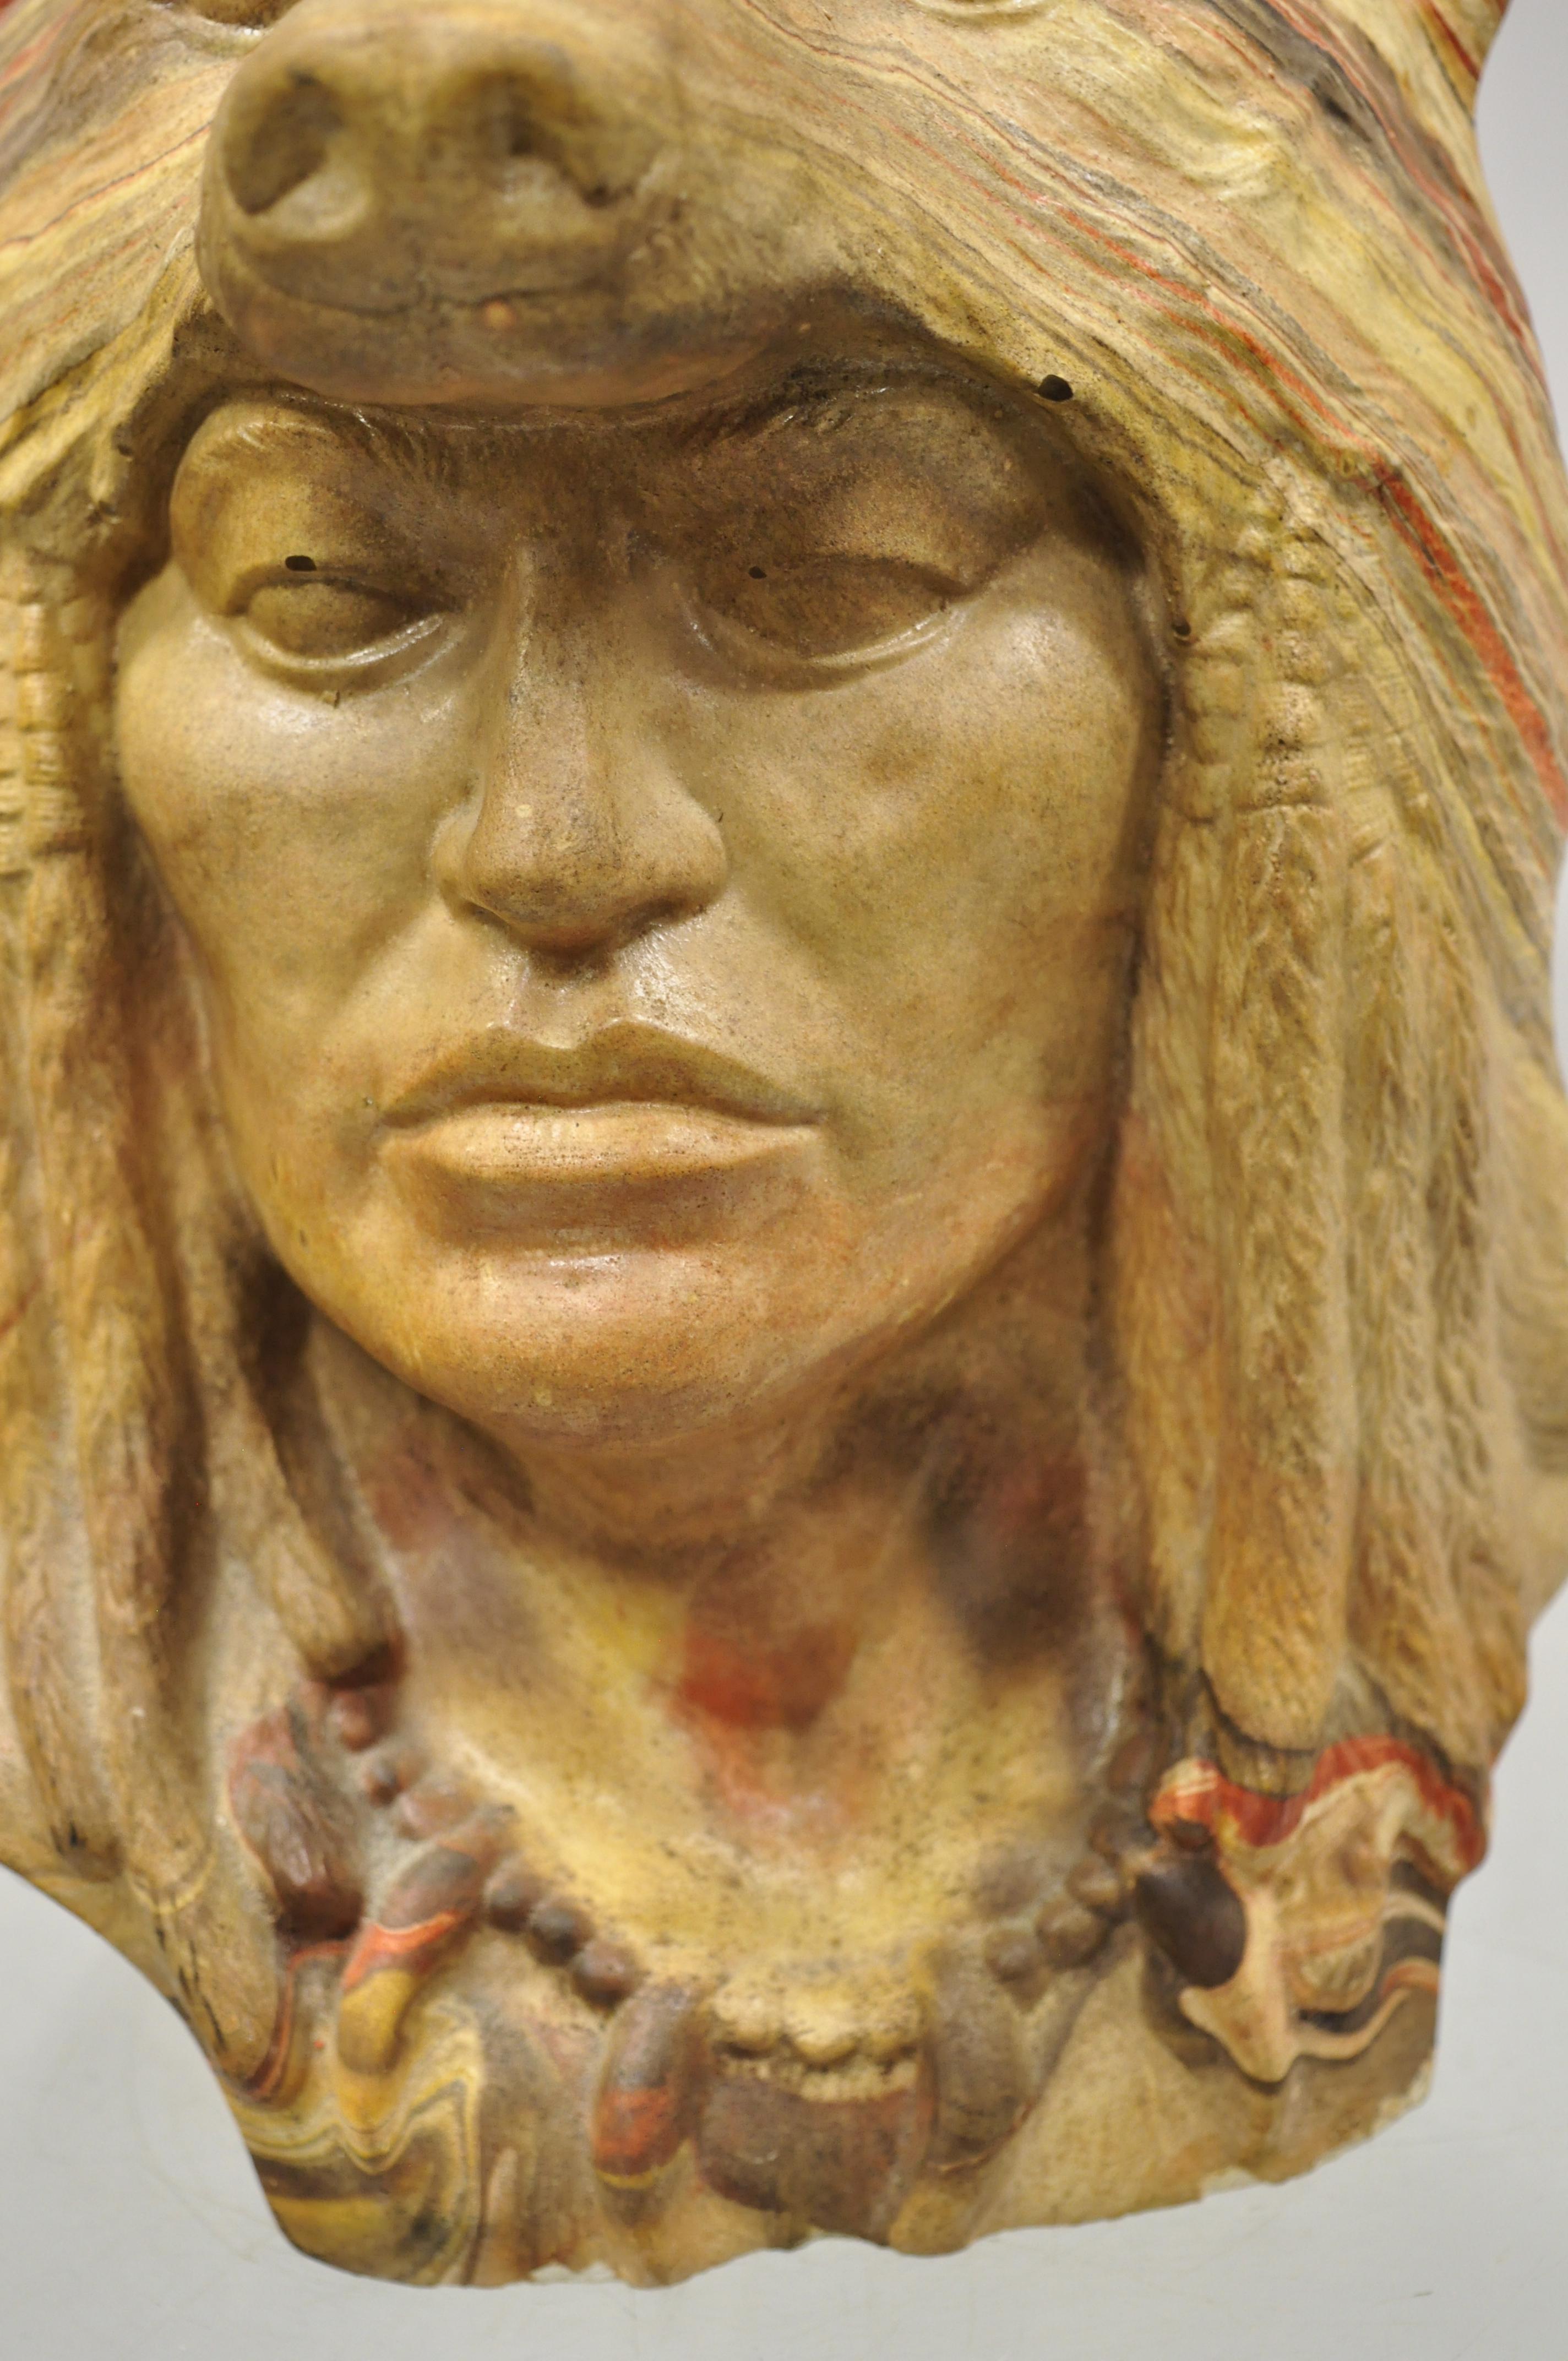 Native American Art Indian Chief Headdress Bronze Bust Sculpture Statue 20 lbs 